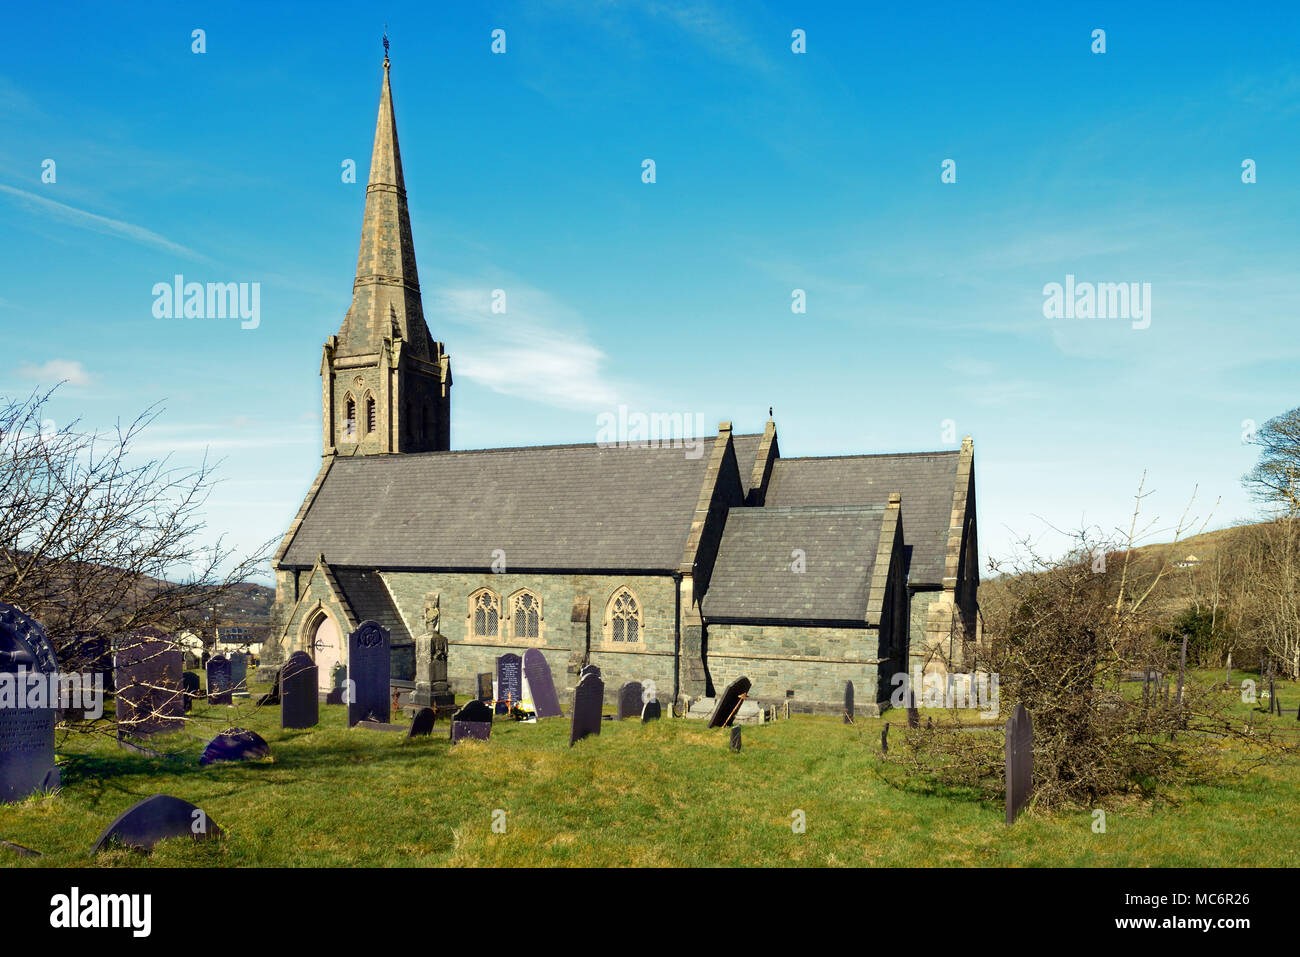 La Chiesa di Cristo si trova nel villaggio di Deiniolen nel Galles del Nord. È stato costruito nel 1857 per la Chiesa anglicana cavatori ed è ora un edificio classificato Grade II. Foto Stock